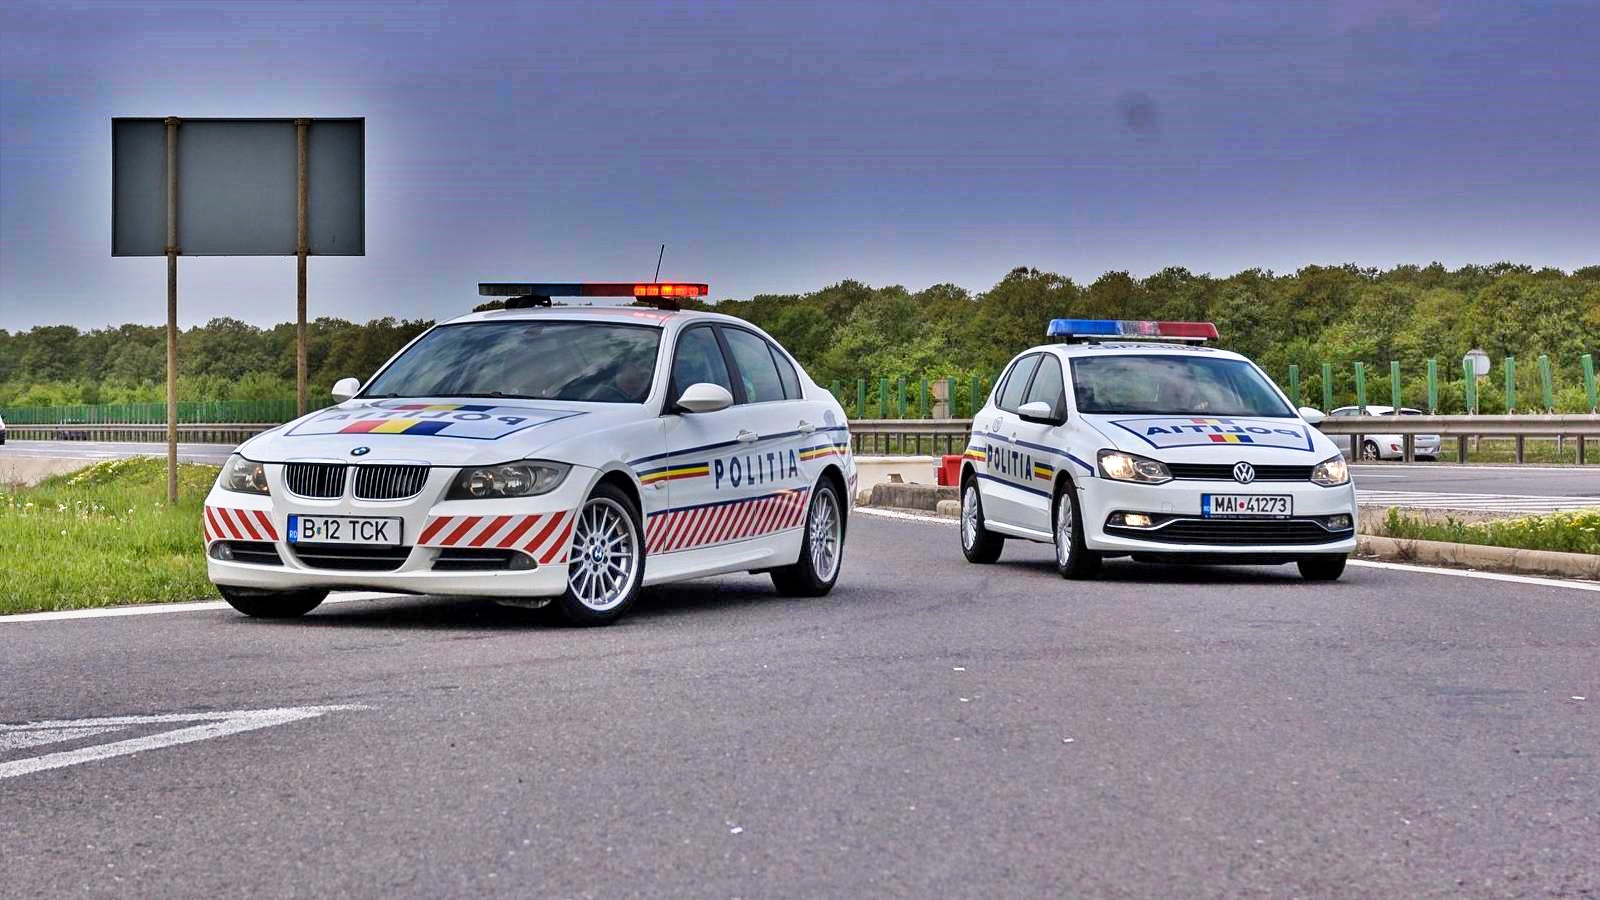 ADVERTENCIA de la policía rumana sobre el fraude automovilístico